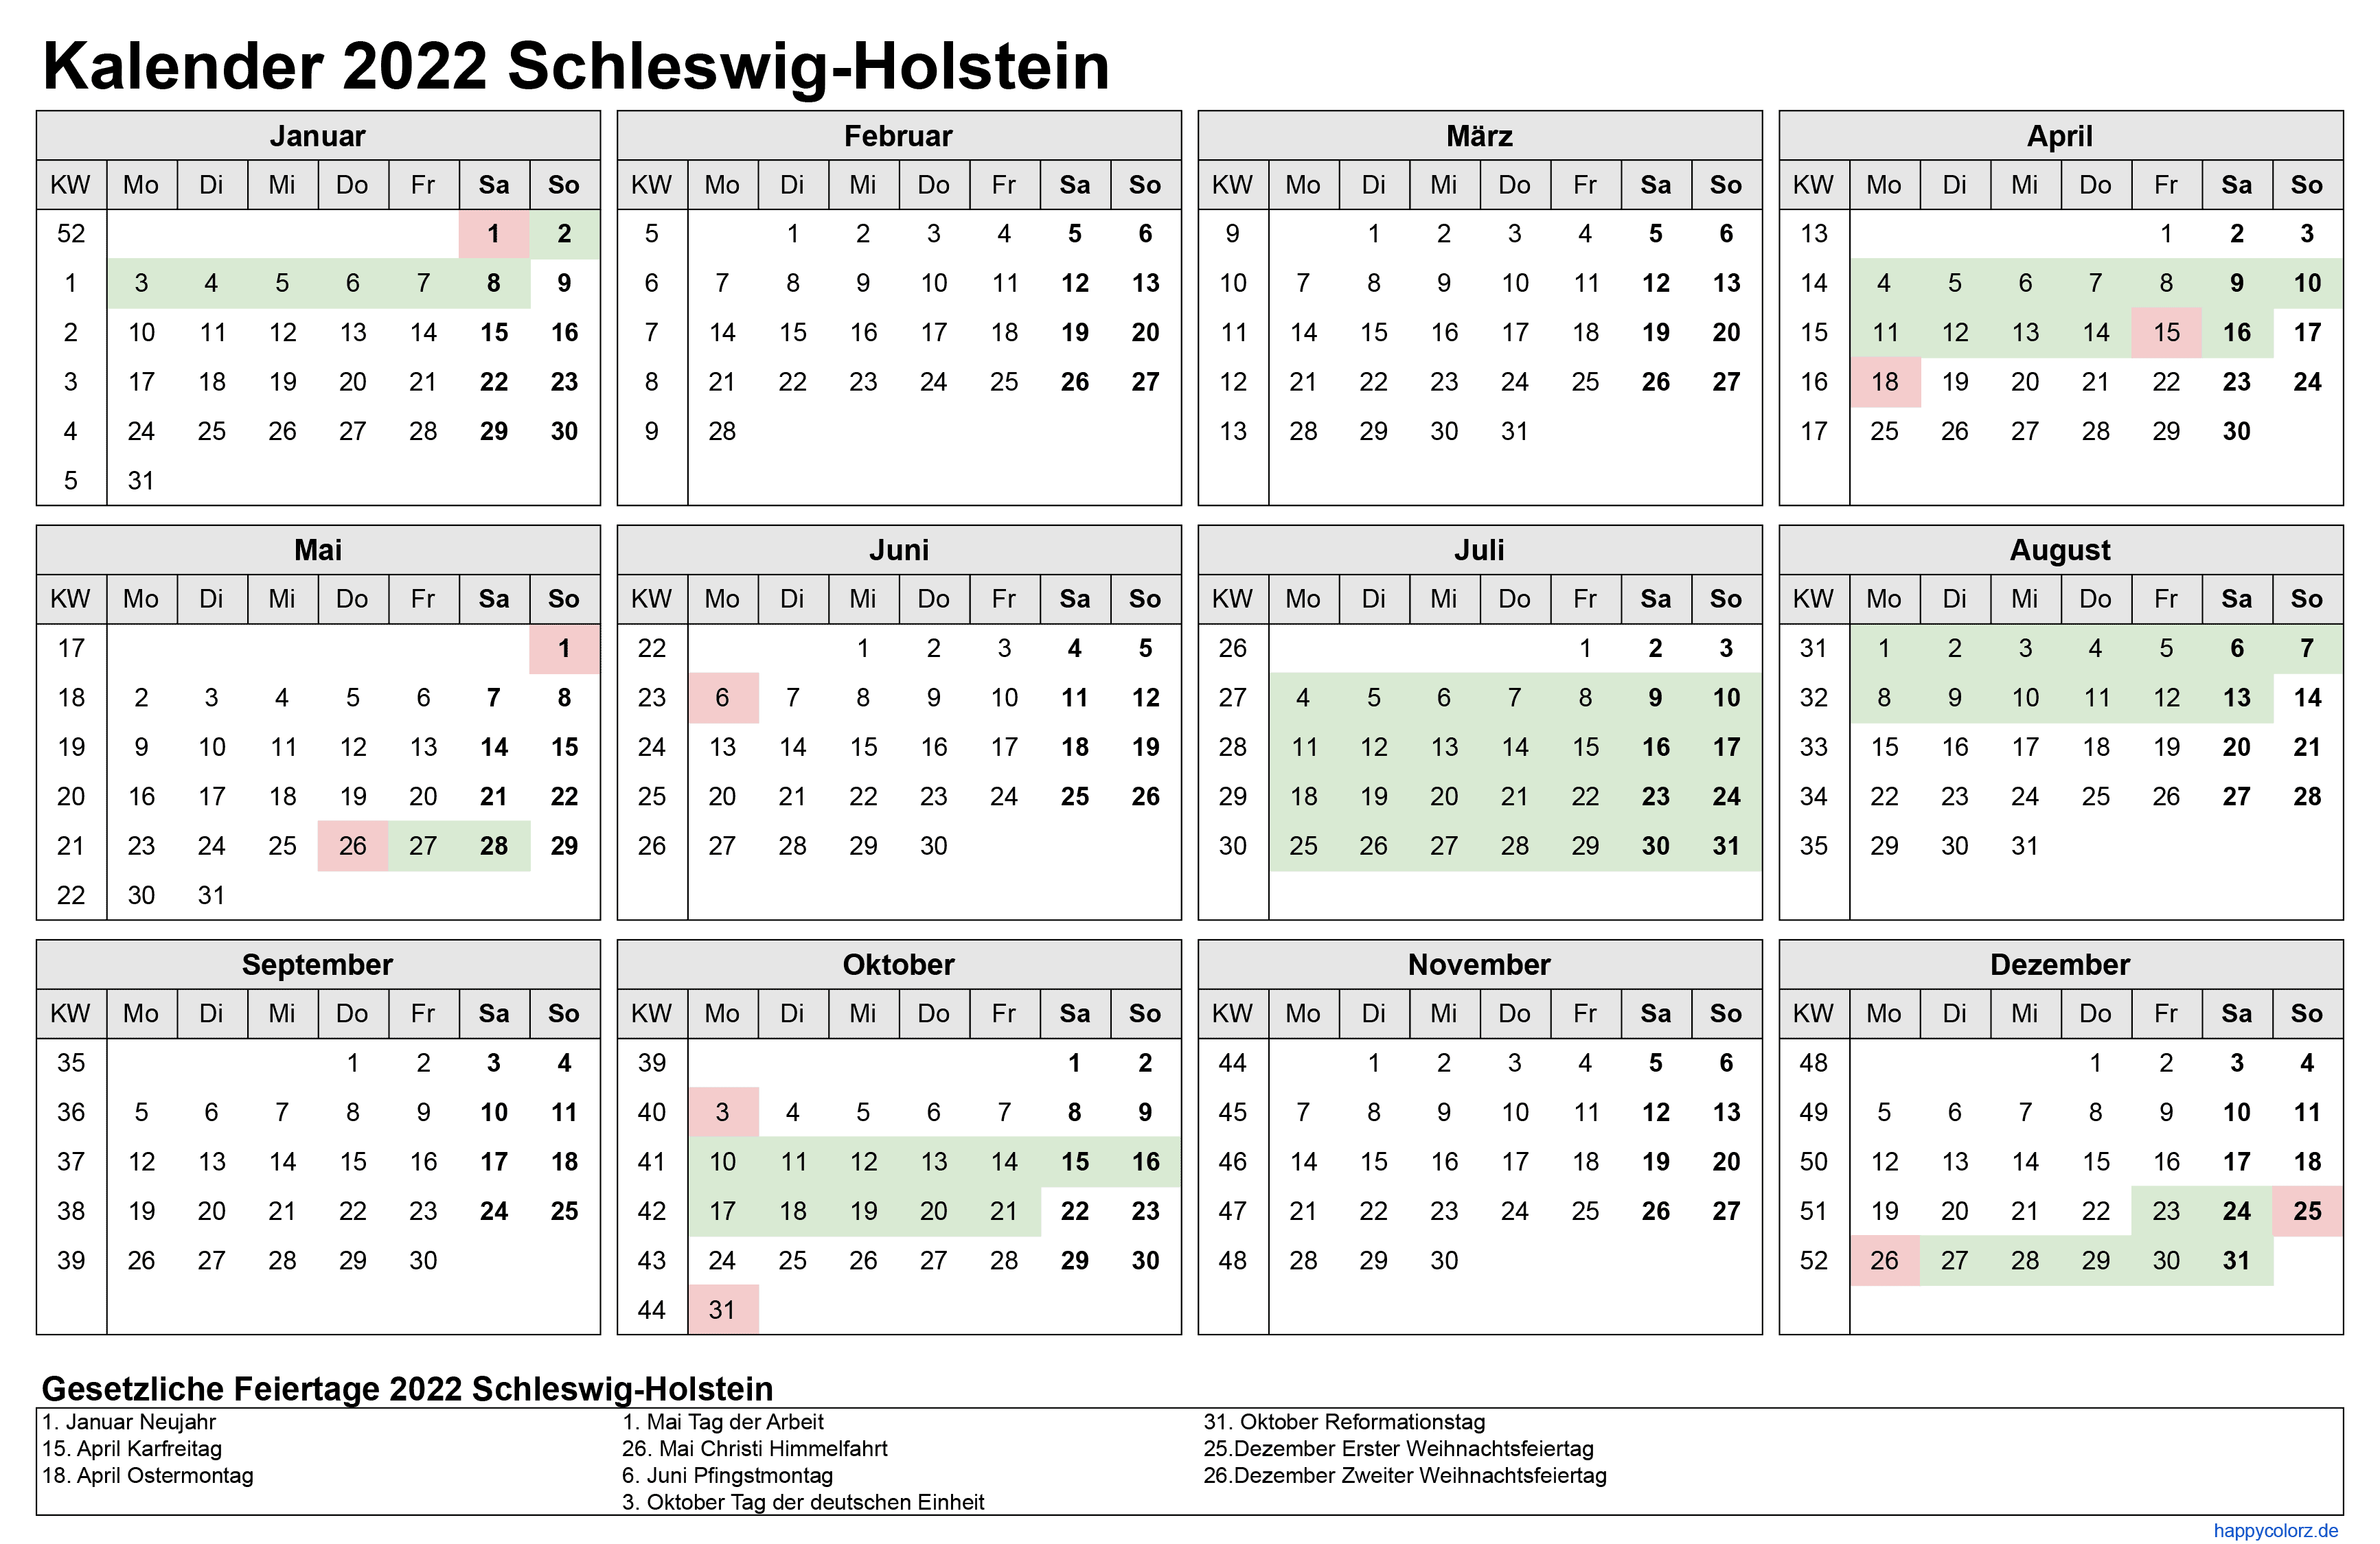 Kalender 2022 Schleswig-Holstein zum Ausdrucken